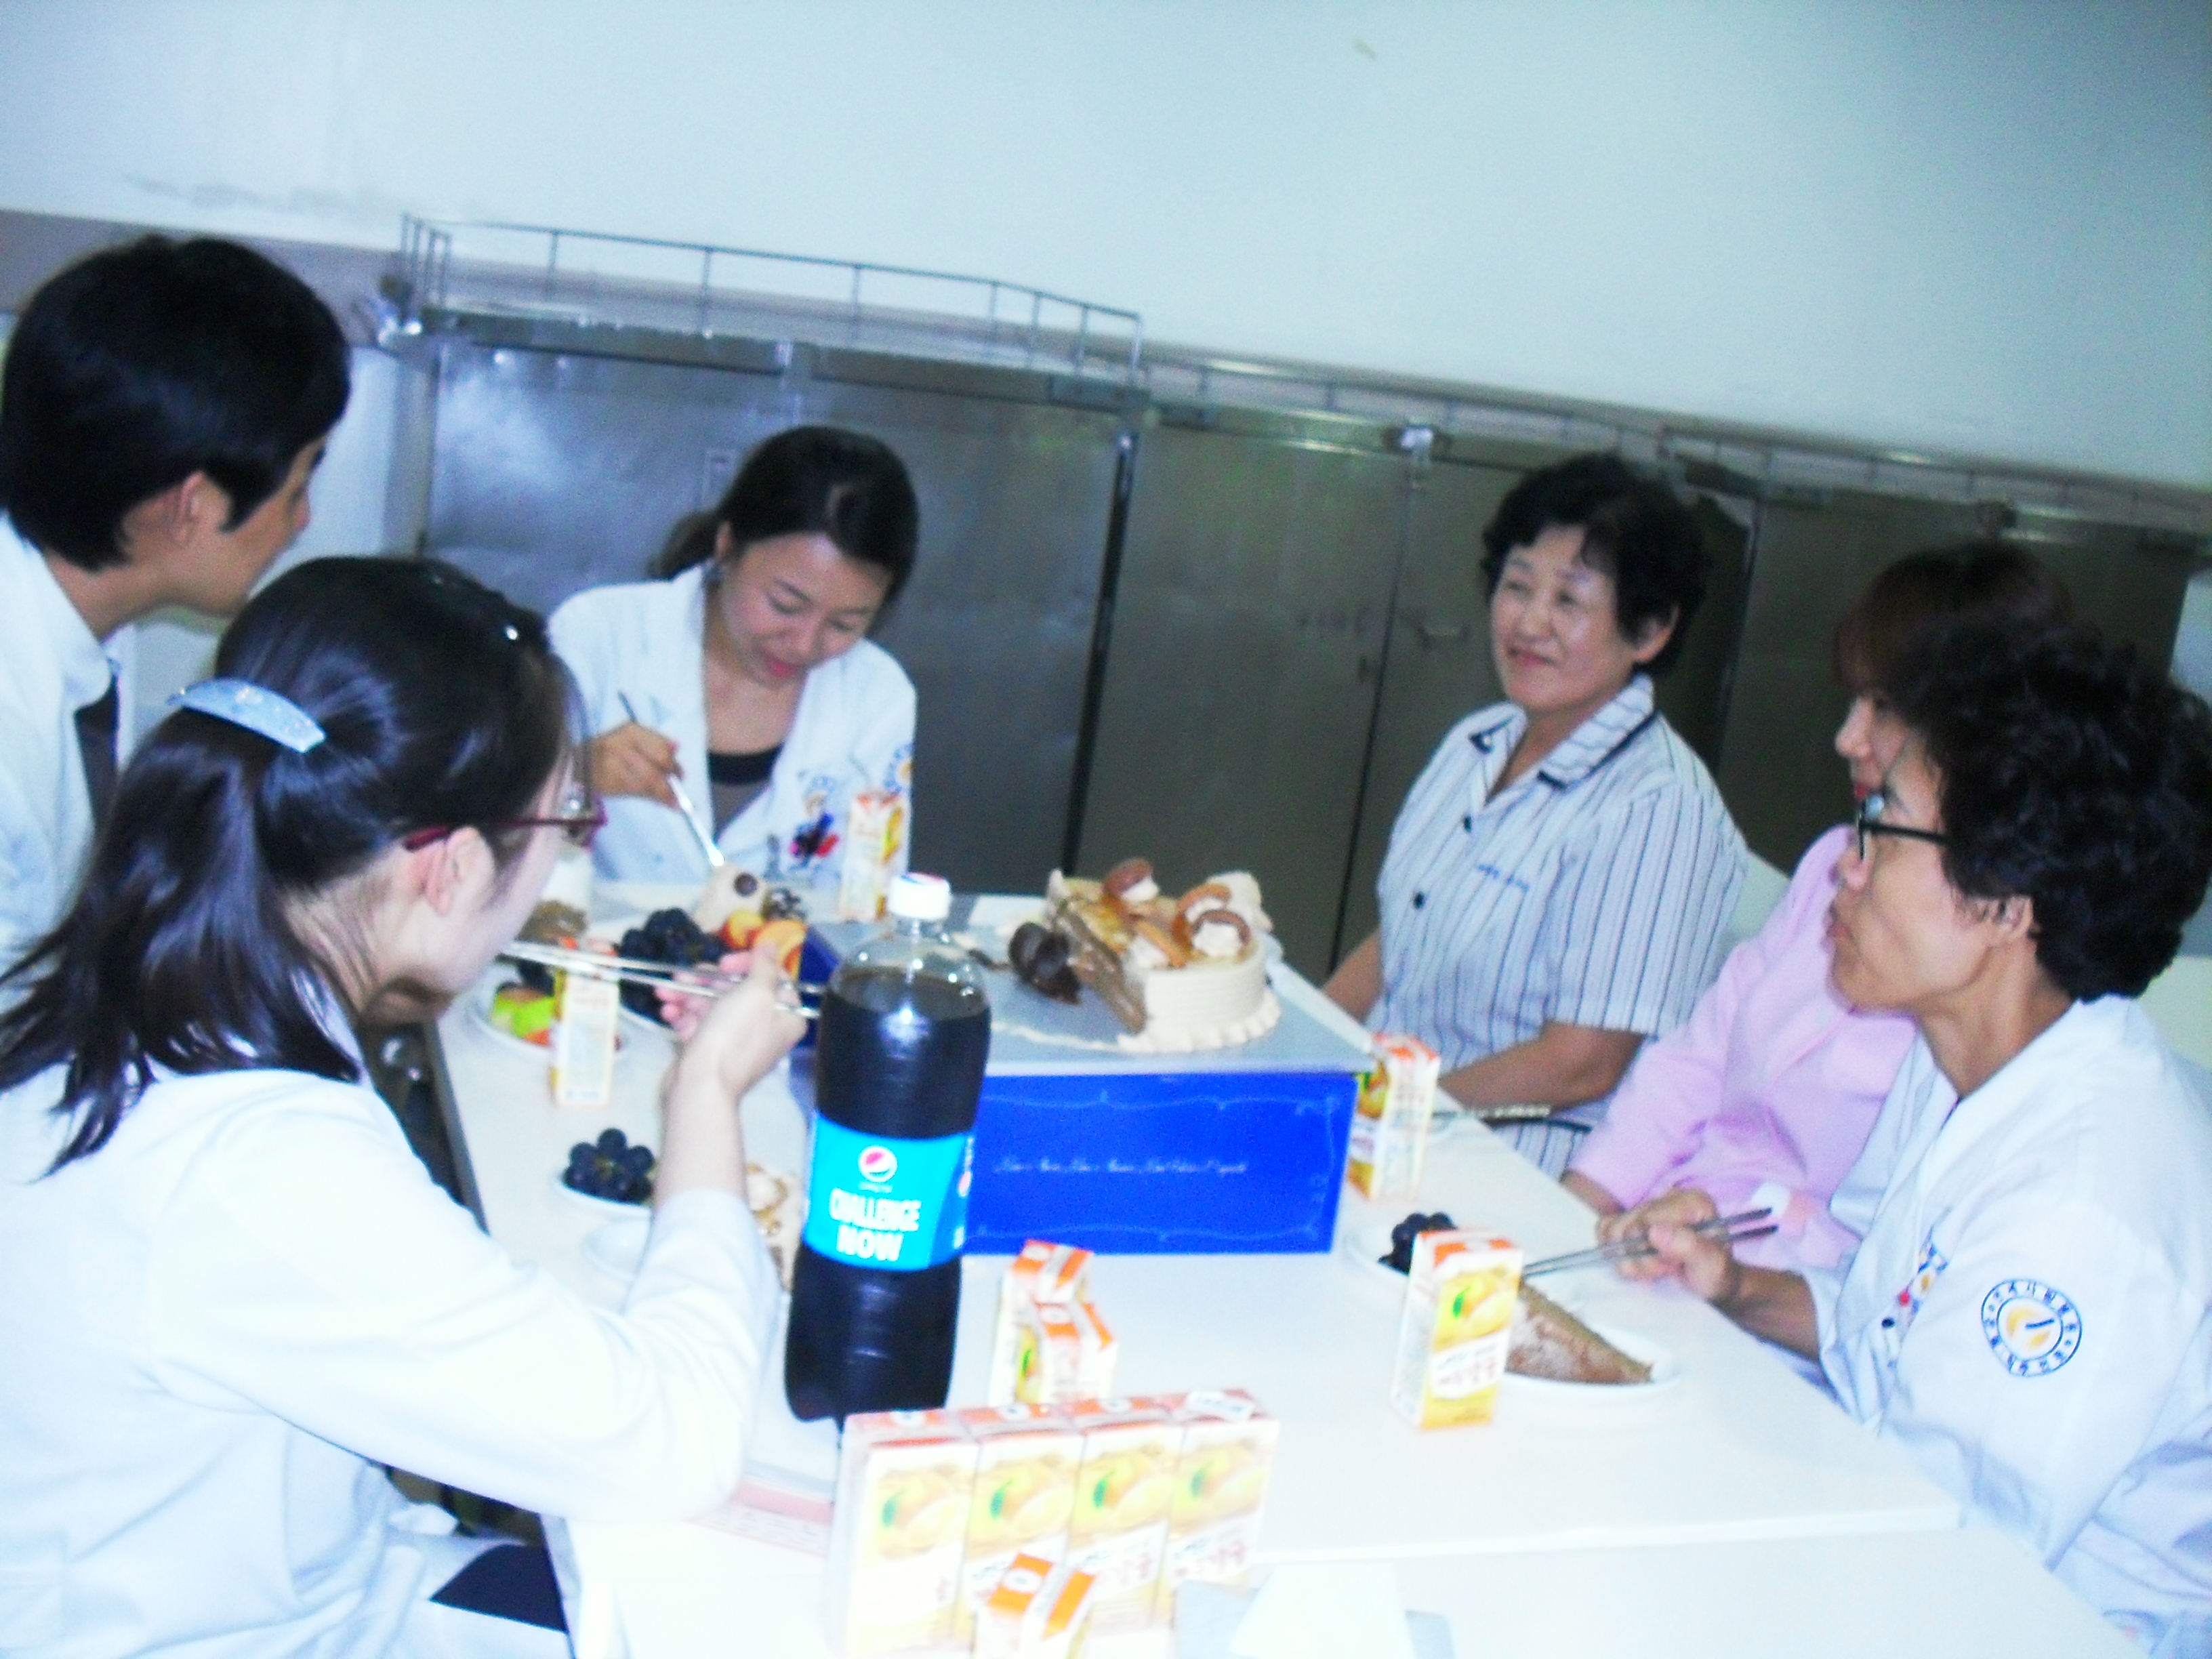 강남 연세사랑병원 9월 생일자 파티 게시글의 3번째 첨부파일입니다.